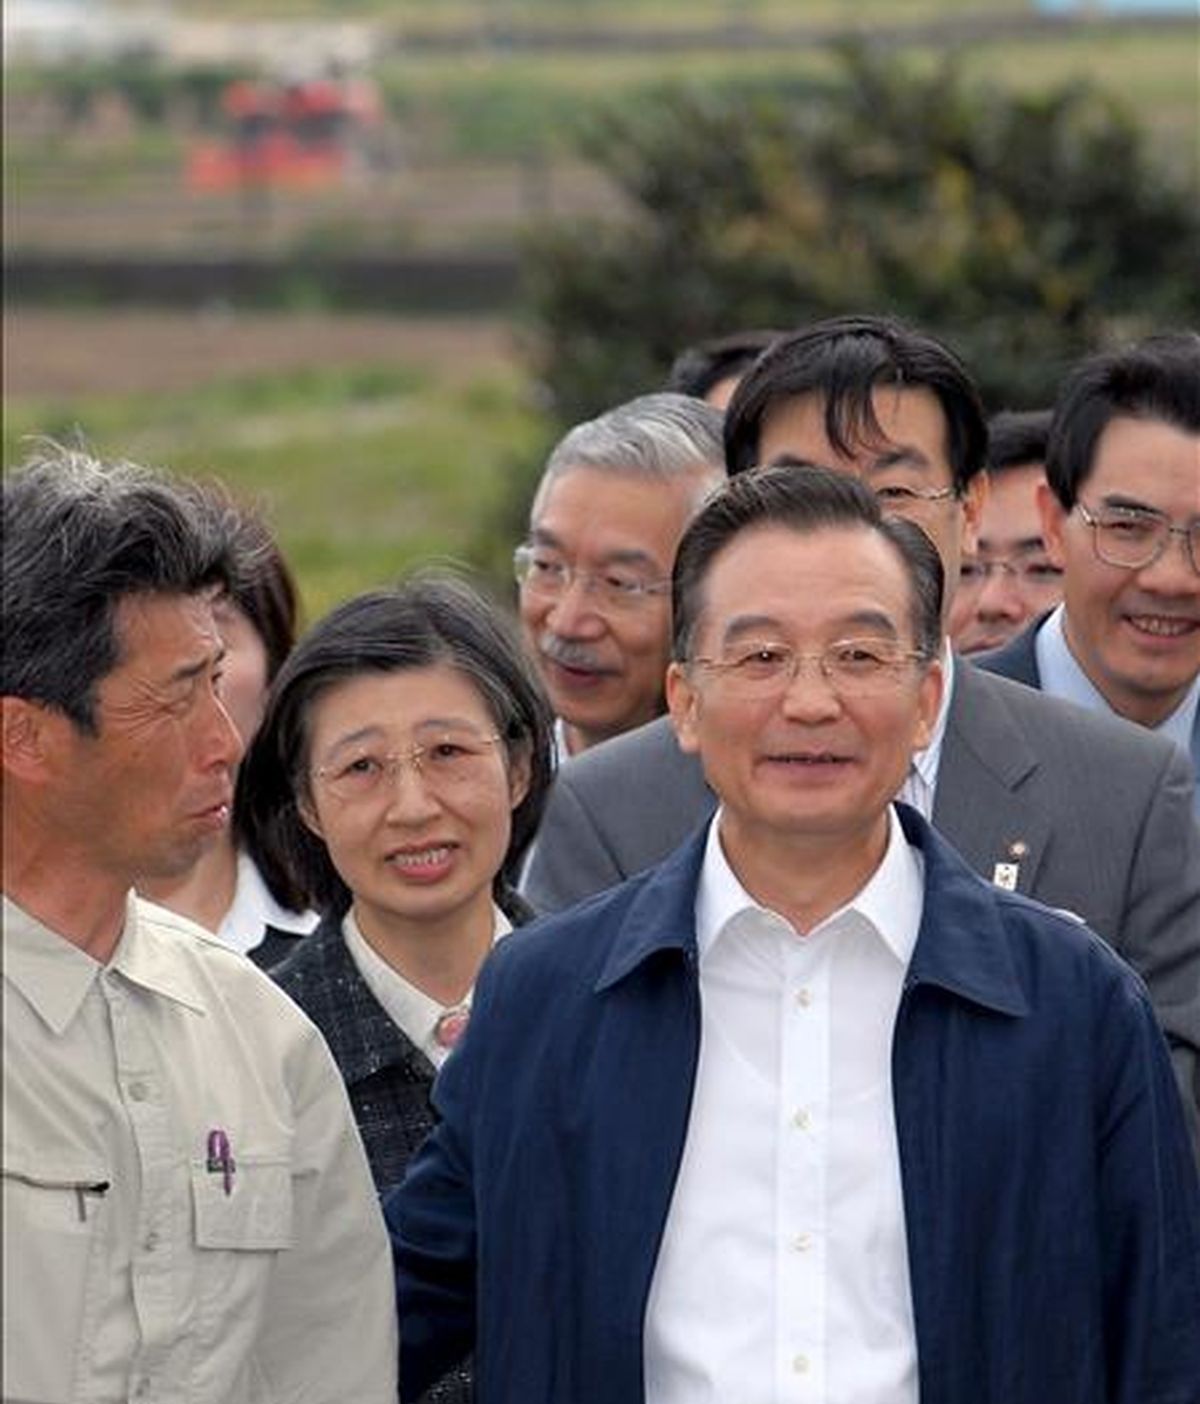 El primer ministro chino, Wen Jiabao (c), durante una visita a una granja en Kyoto (Japón). Jibao asistirá a la LXV Asamblea General de la ONU. EFE/Archivo